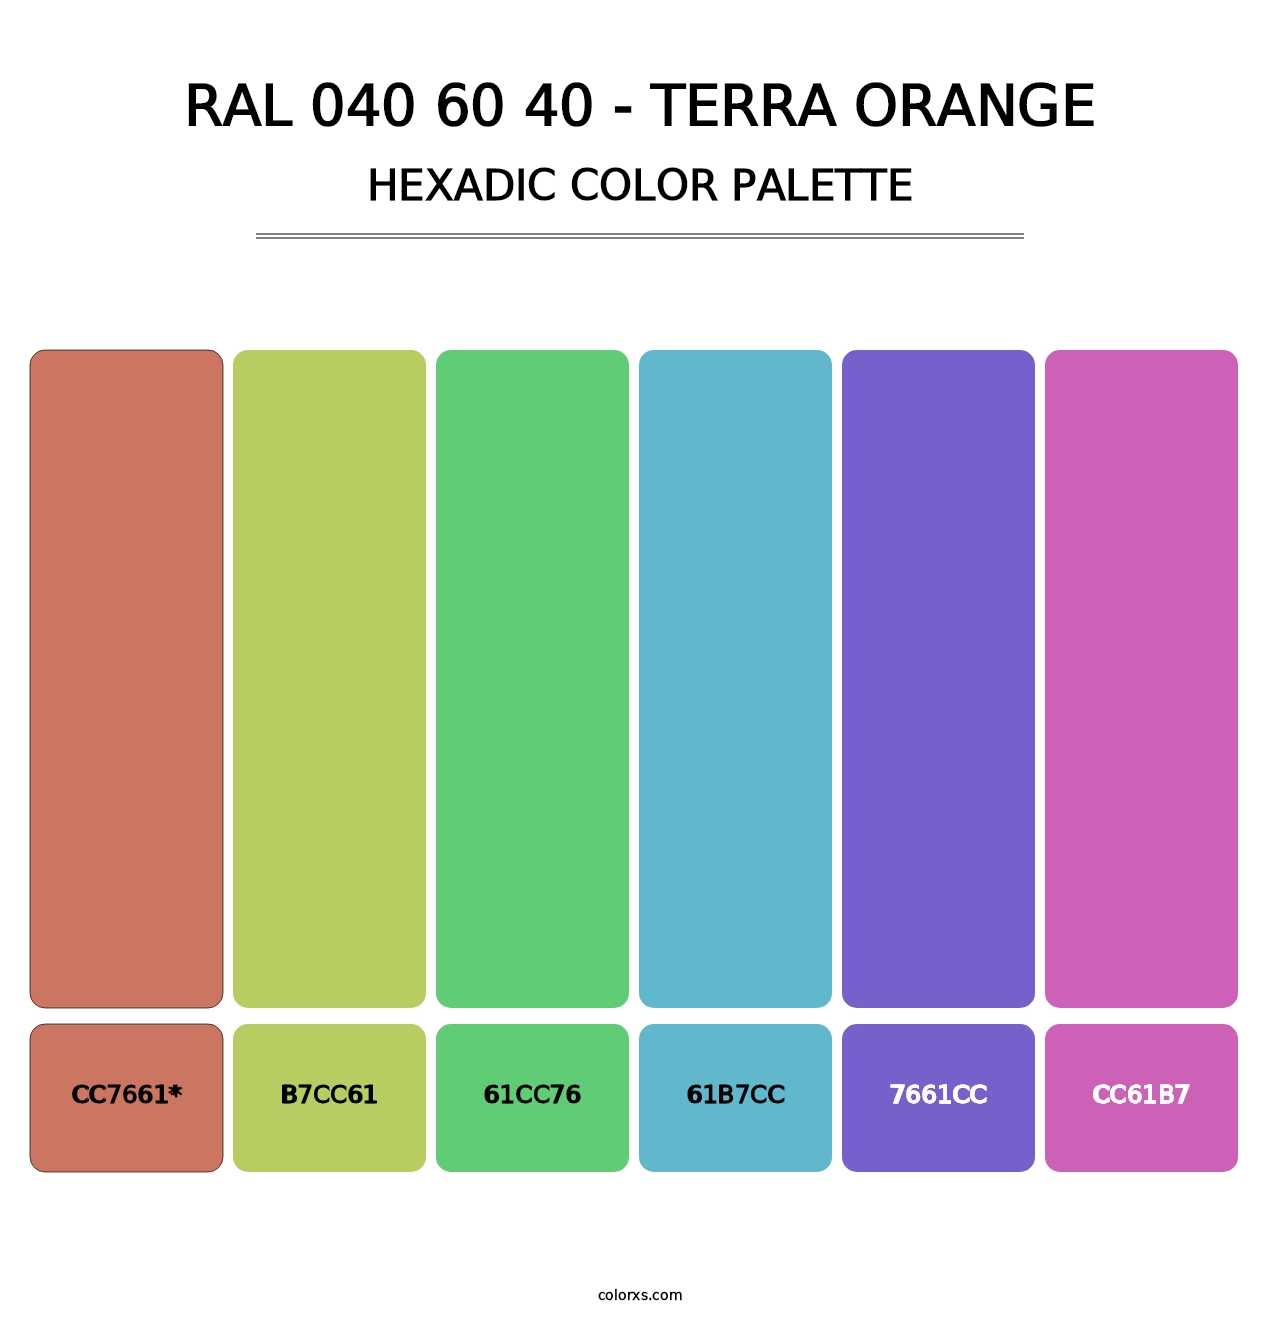 RAL 040 60 40 - Terra Orange - Hexadic Color Palette